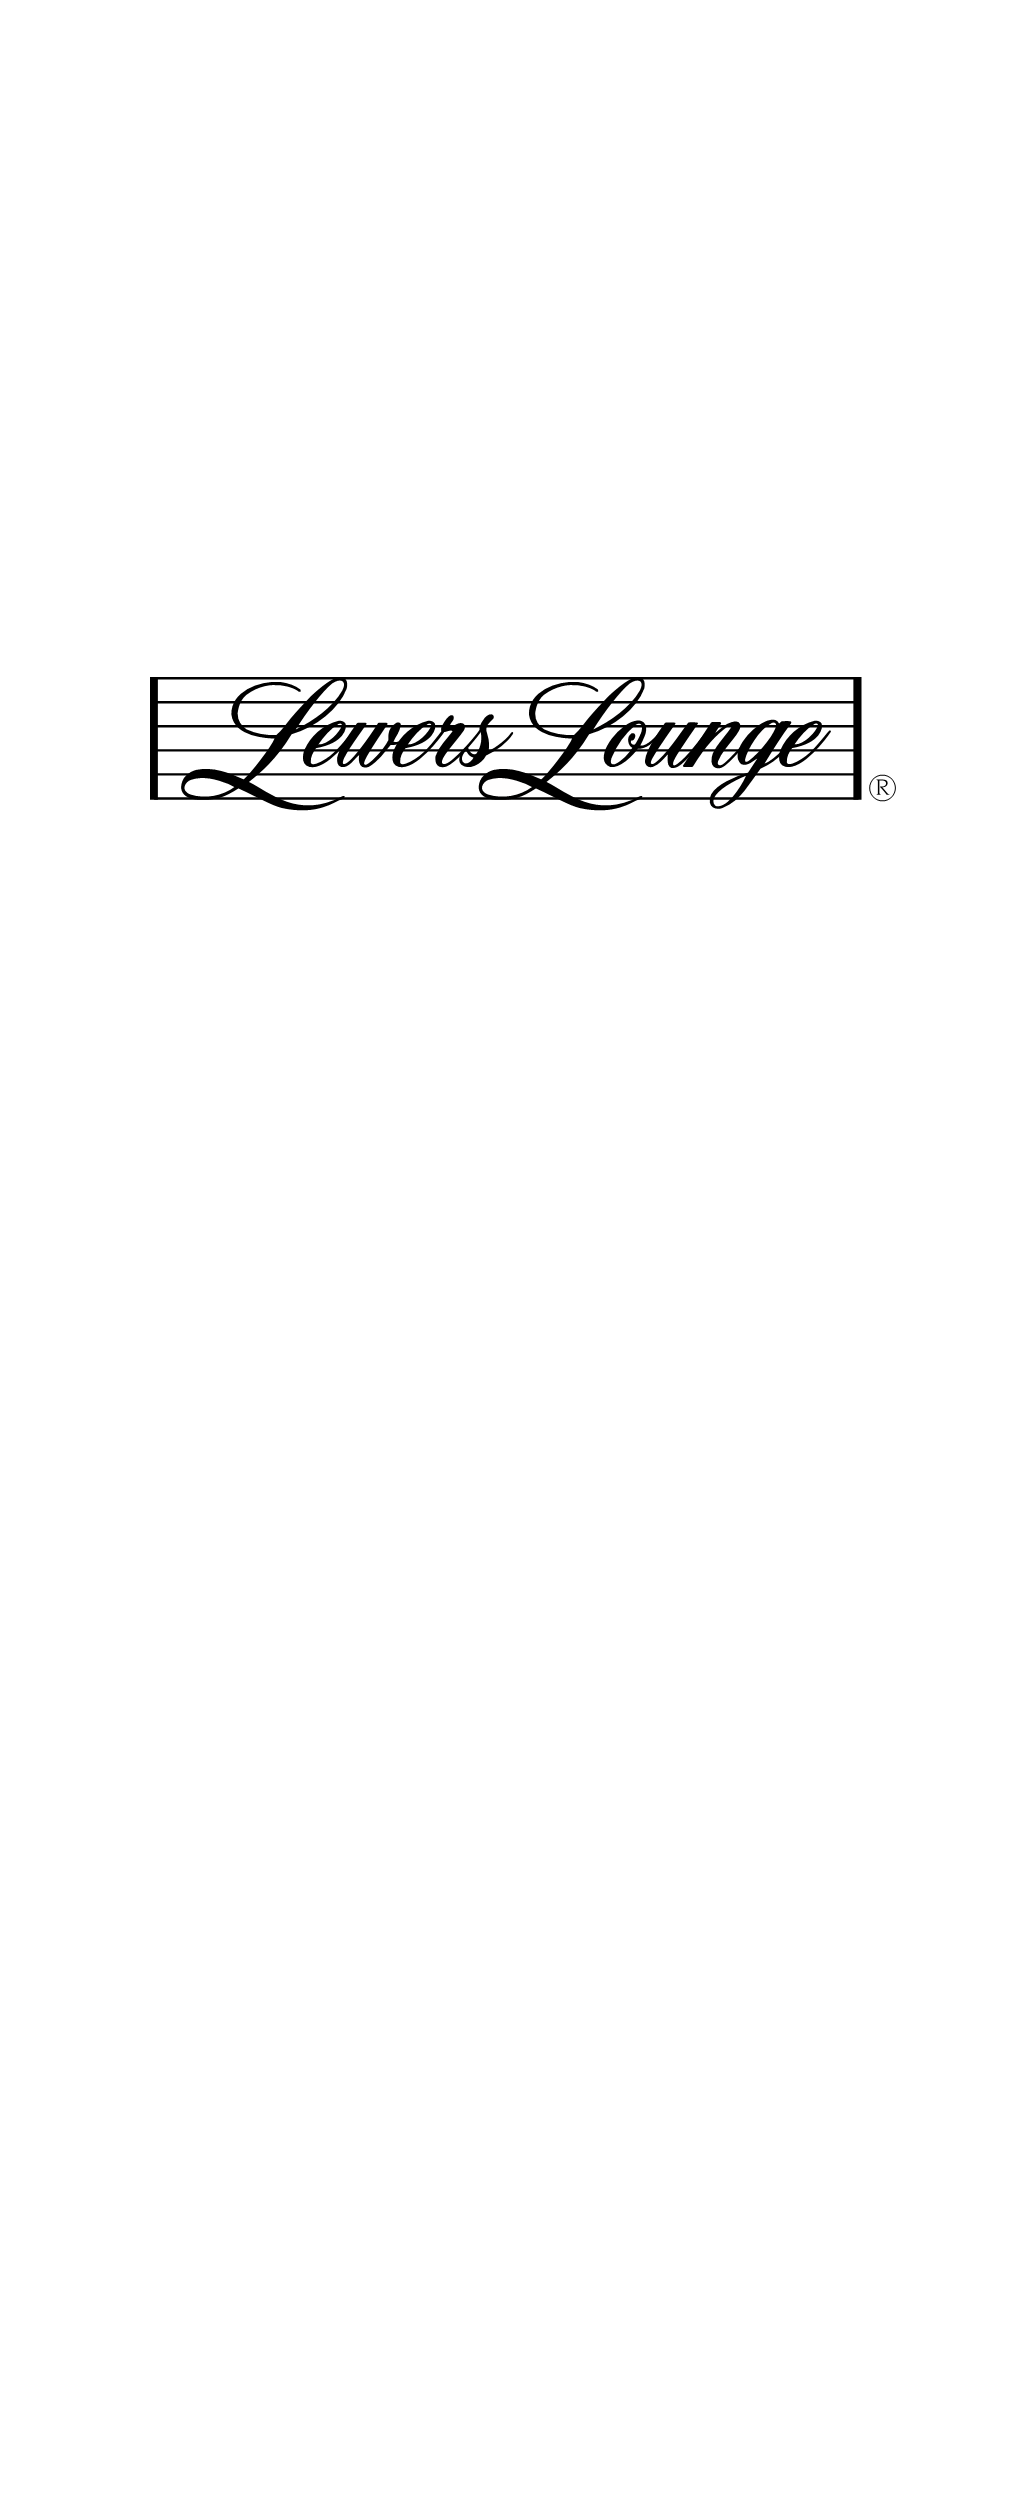 Lewers Lounge Menu